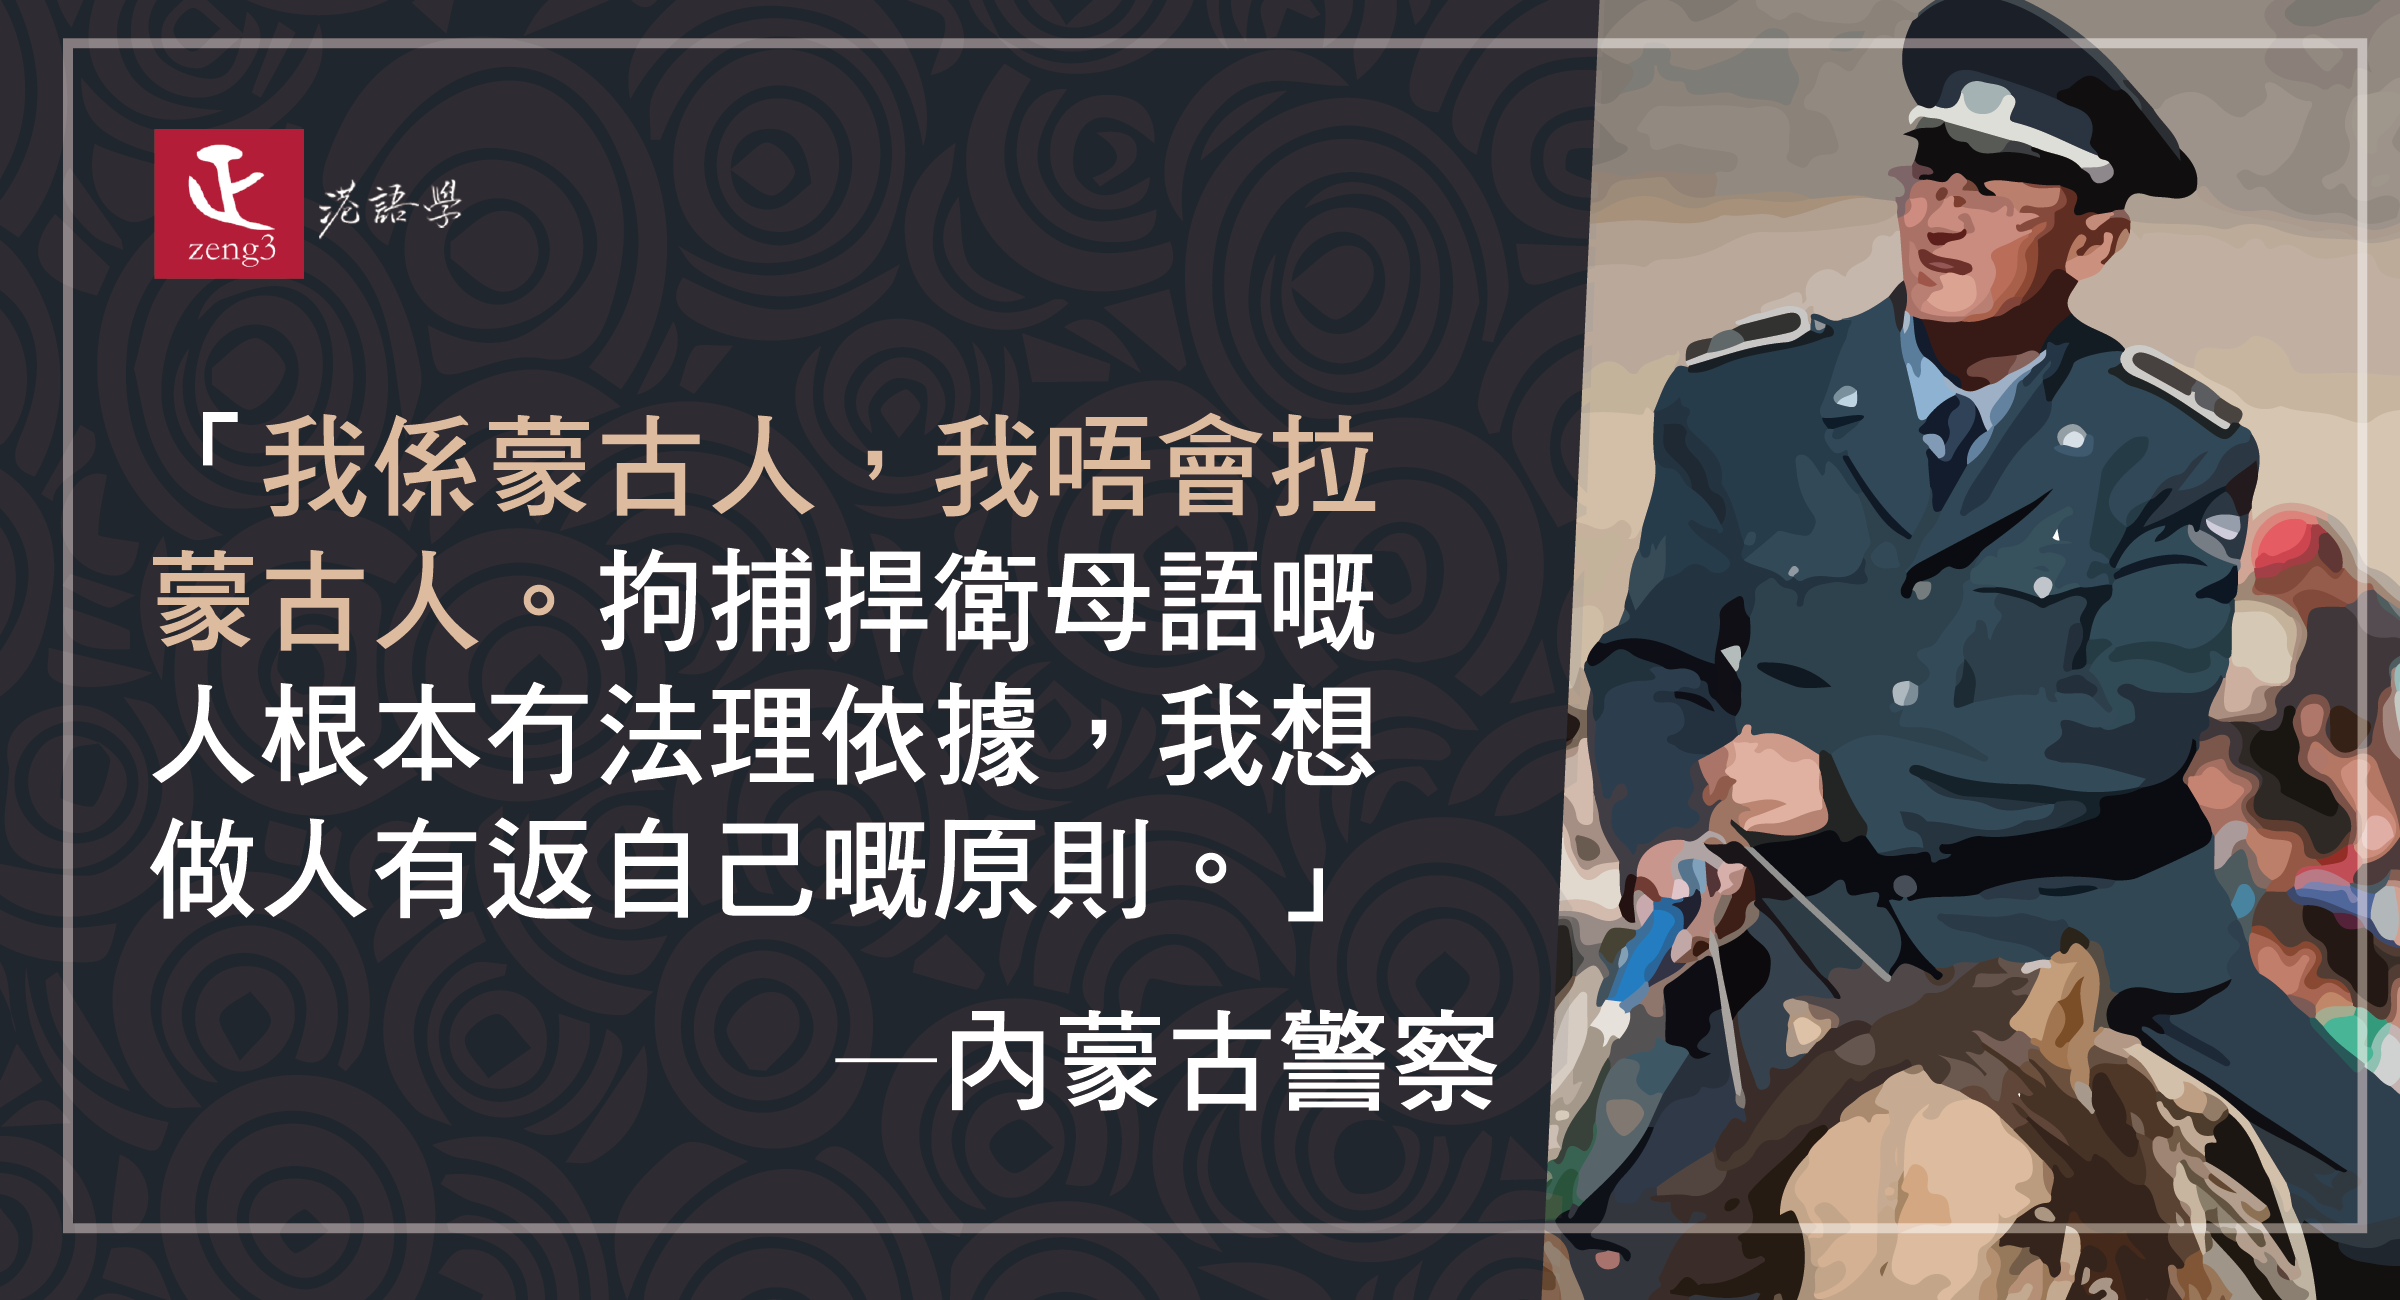 內蒙警察：我係蒙古人，我唔會拉蒙古人 拘捕捍衛母語嘅人根本冇法理依據